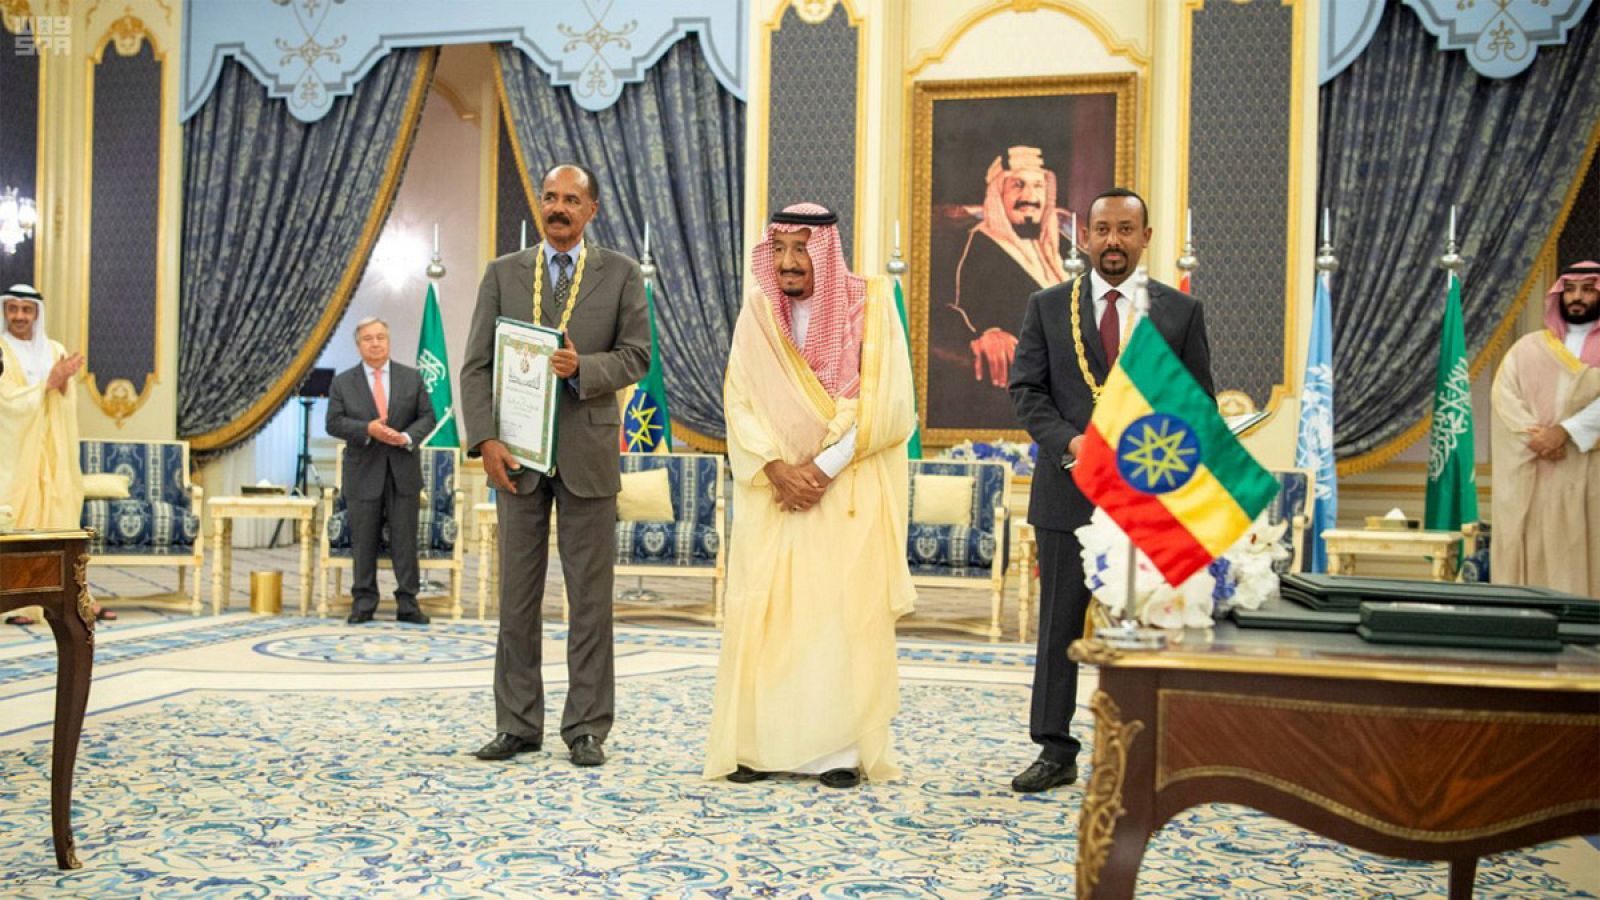 El rey de Arabia Saudí, Salman bin Abdulaziz Al Saud, junto al presidente de Eritrea, Isaias Afewerki, y el primer ministro de Etiopía, Abiy Ahmed